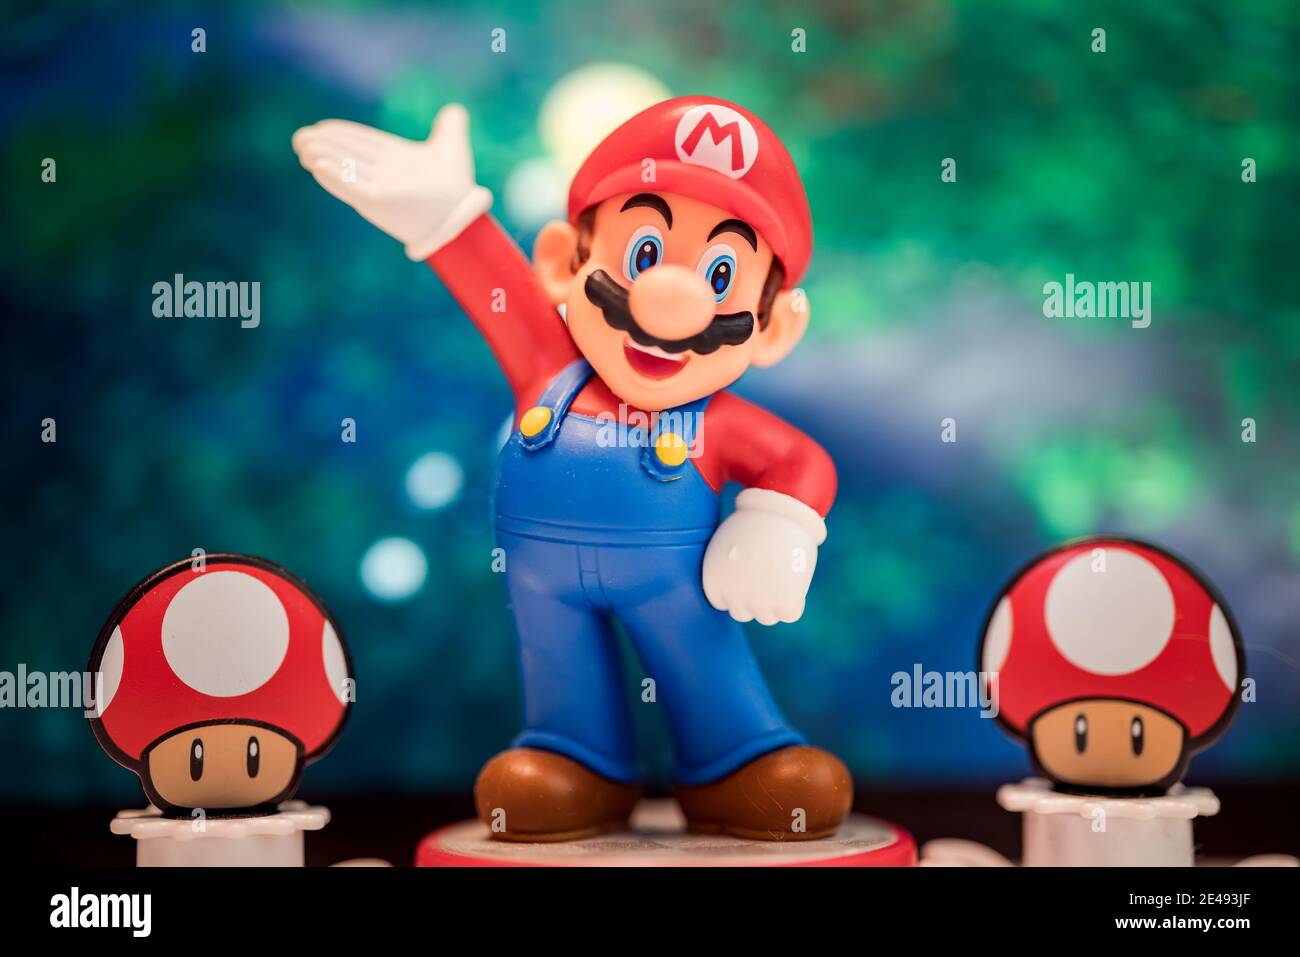 MOSKAU, RUSSLAND - 22. August 2020: Super Mario Bros Figur Charakter.Super Mario ist eine japanische Plattform Videospiel-Serie und Medien-Franchise erstellt b Stockfoto